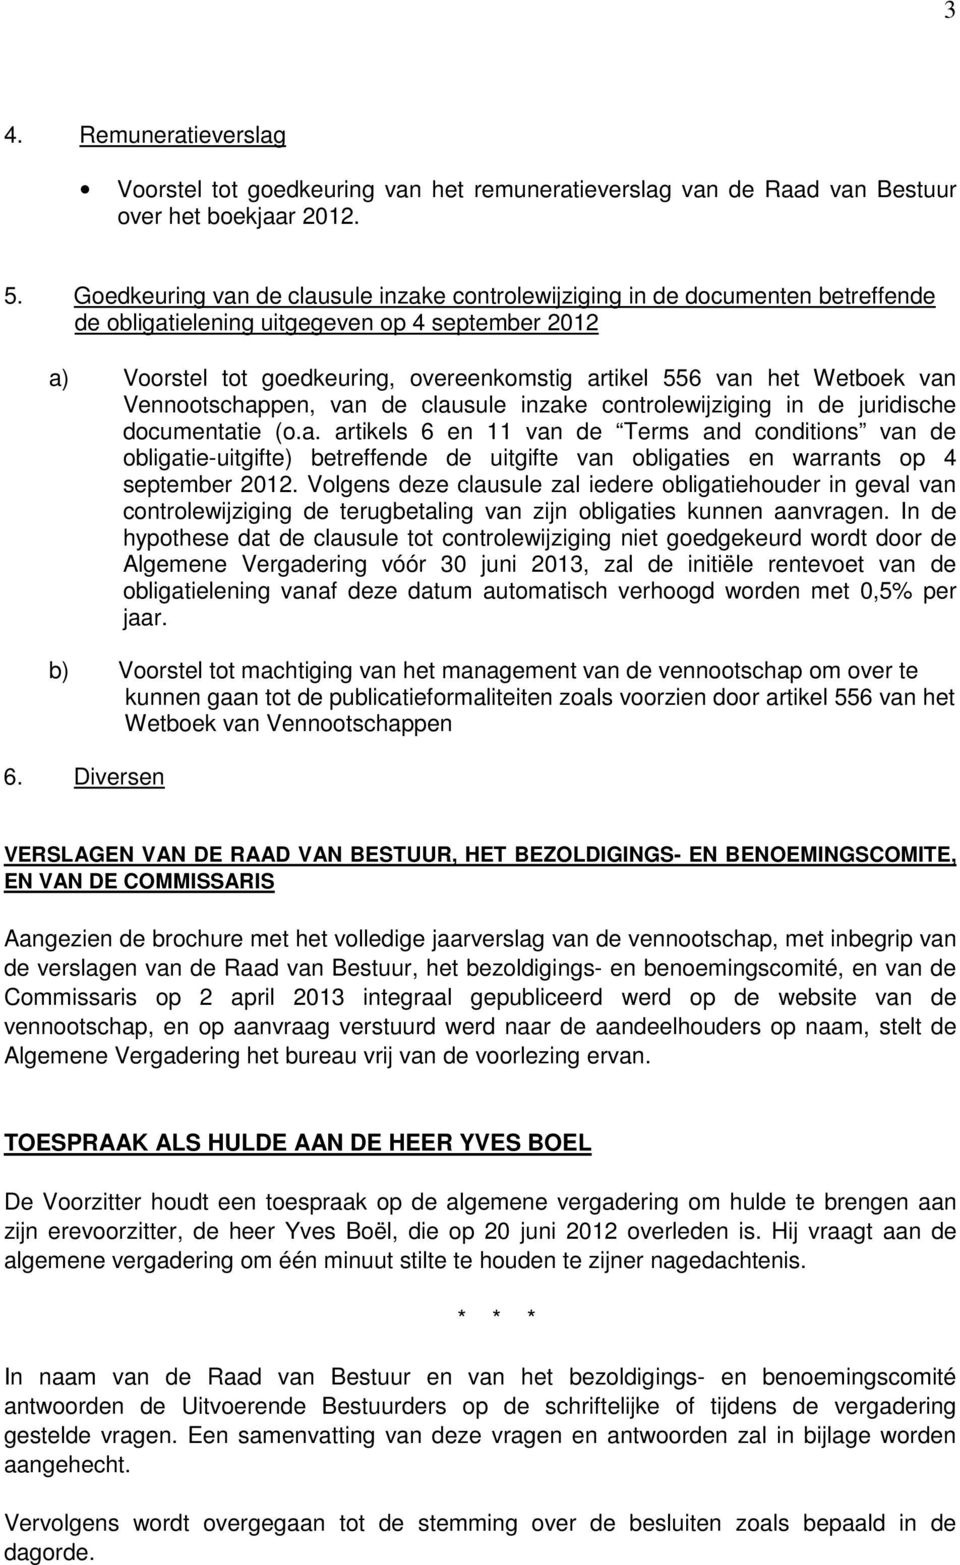 Wetboek van Vennootschappen, van de clausule inzake controlewijziging in de juridische documentatie (o.a. artikels 6 en 11 van de Terms and conditions van de obligatie-uitgifte) betreffende de uitgifte van obligaties en warrants op 4 september 2012.